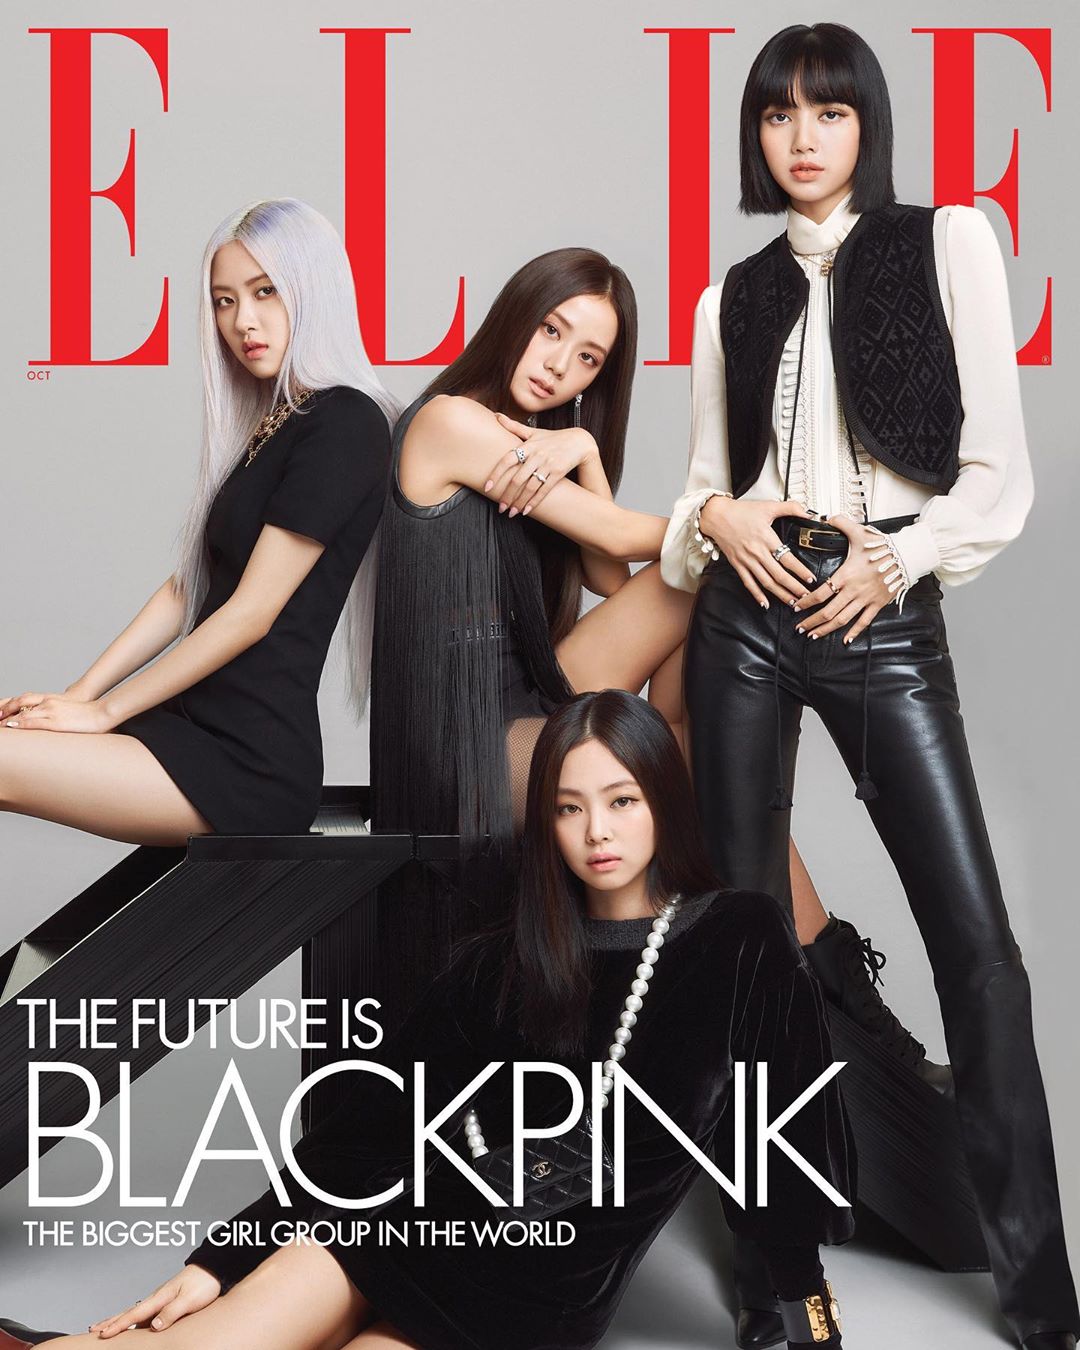 Hãy ngắm nhìn bộ trang phục lộng lẫy của BLACKPINK trên trang bìa tạp chí Elle Mỹ, mỗi hình ảnh đều rất nghệ thuật và đầy quyến rũ.